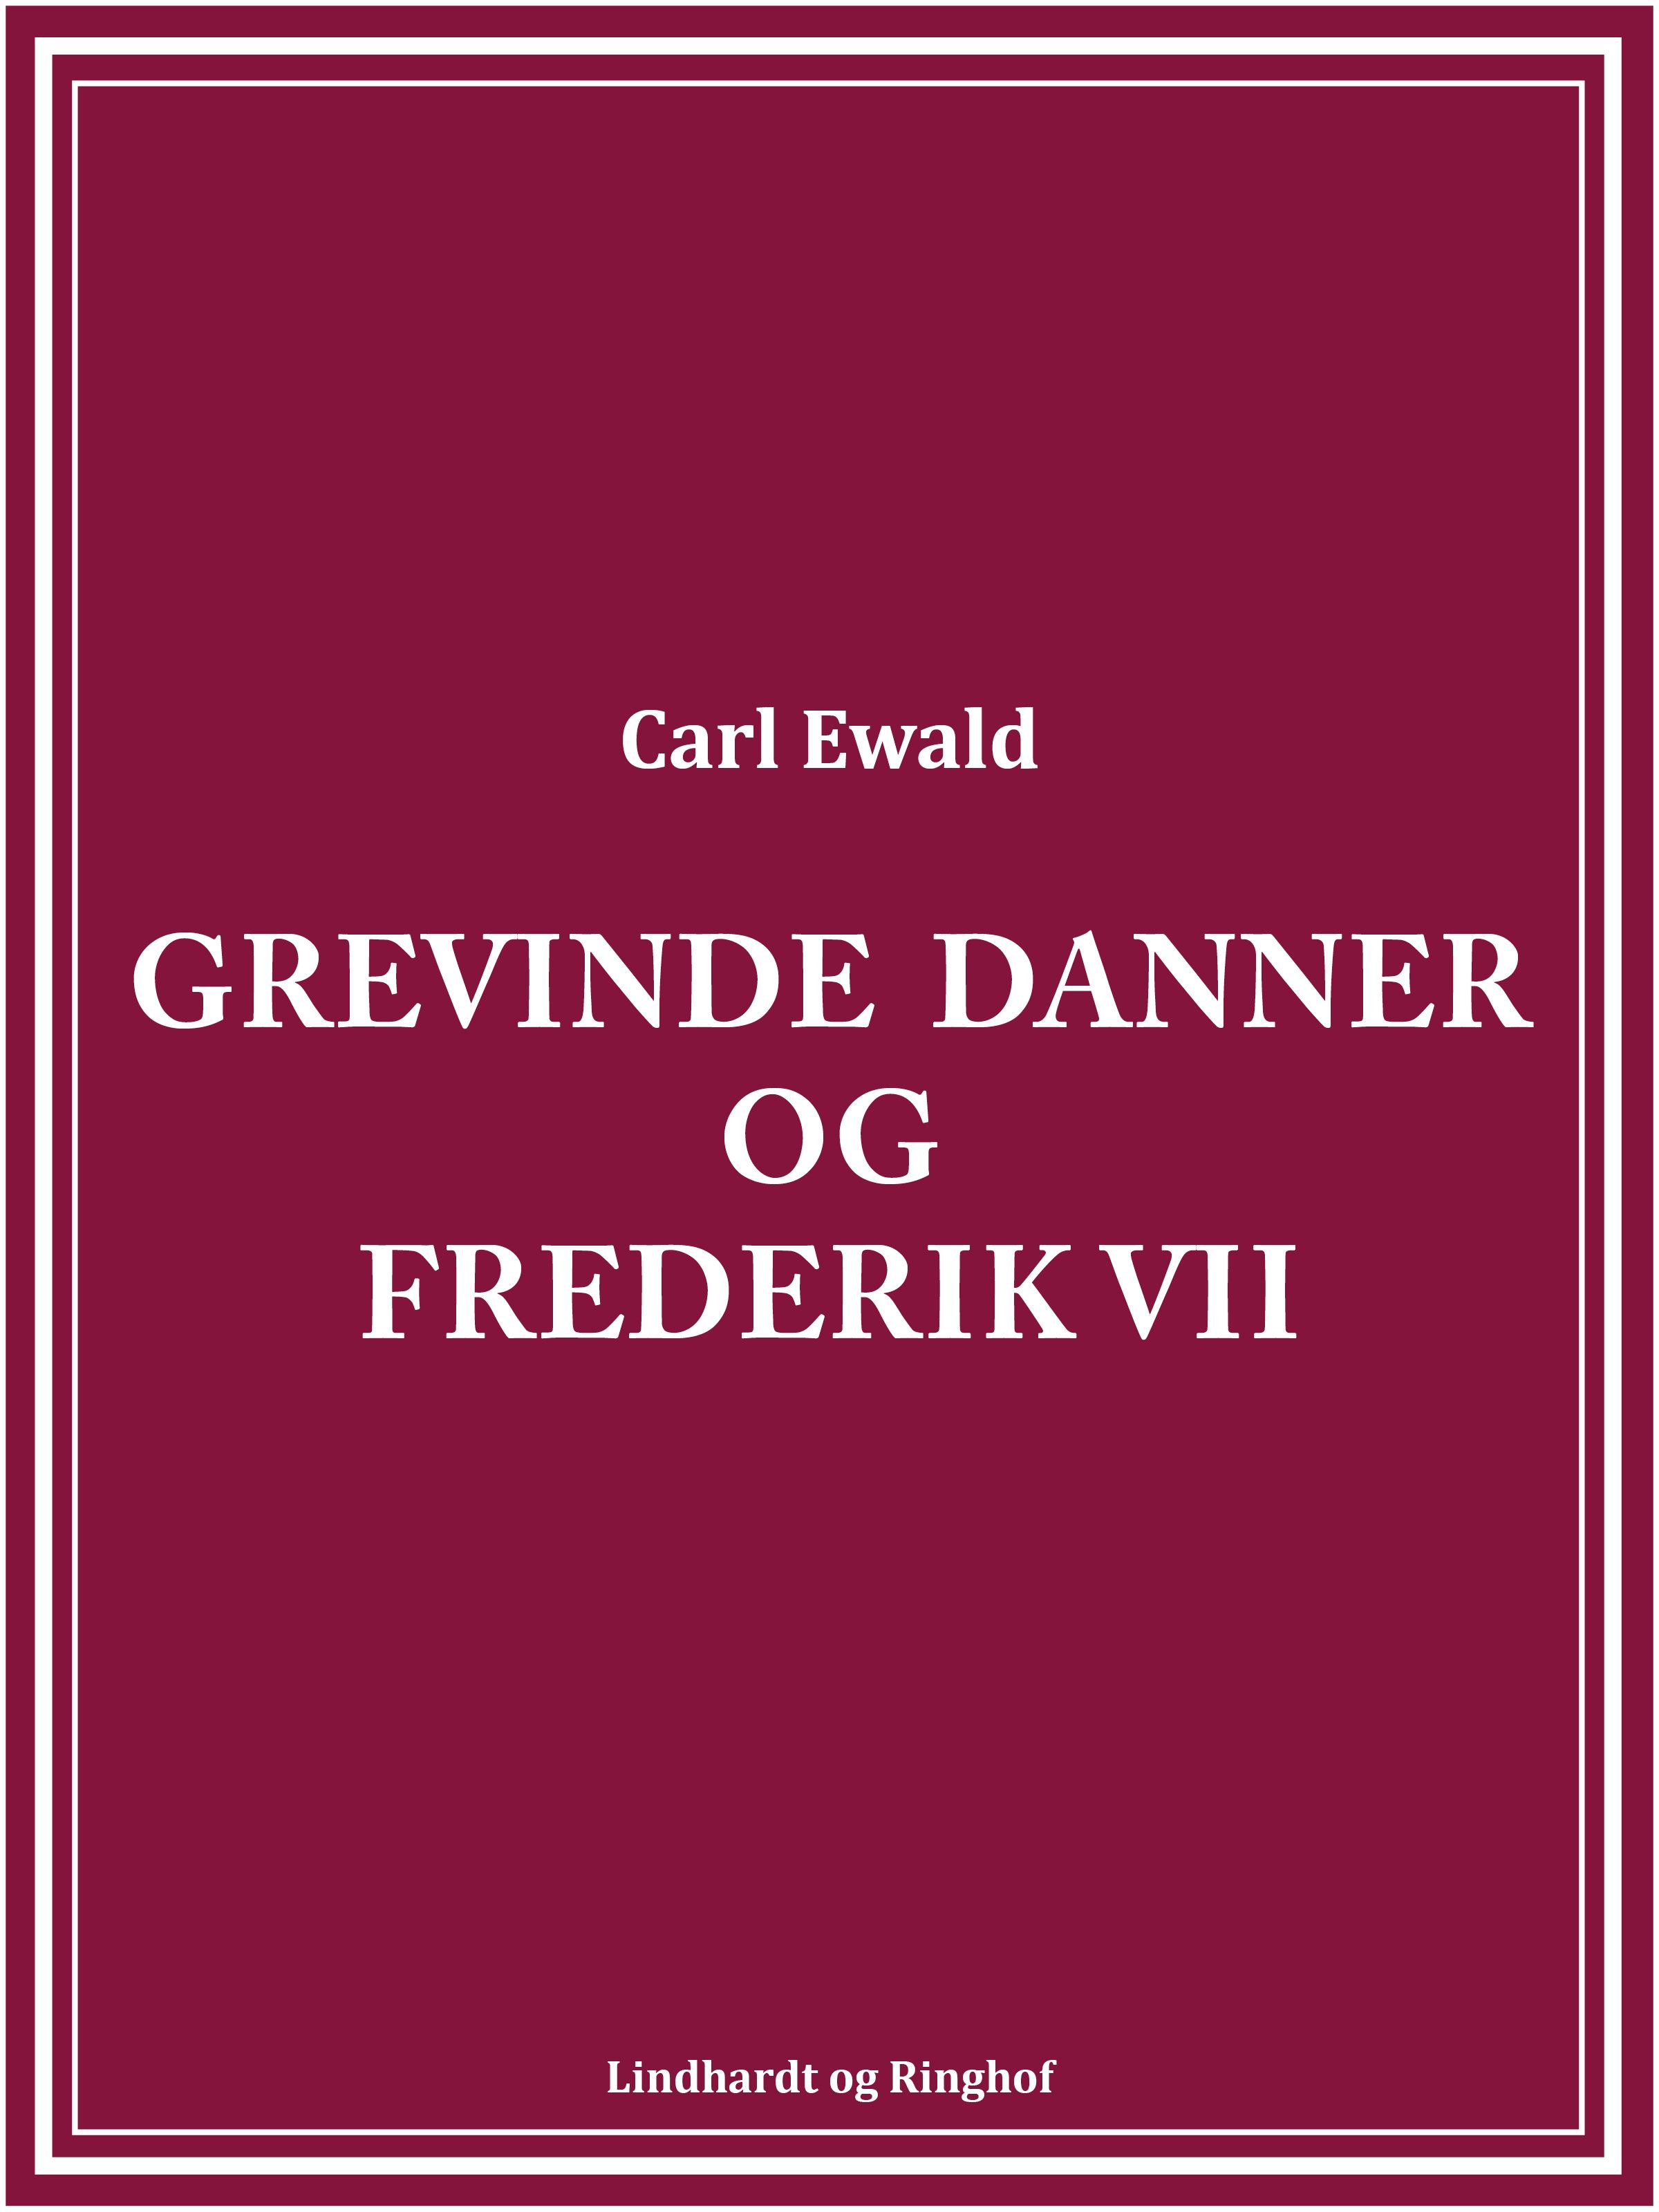 Grevinde Danner og Frederik VII, audiobook by Carl Ewald